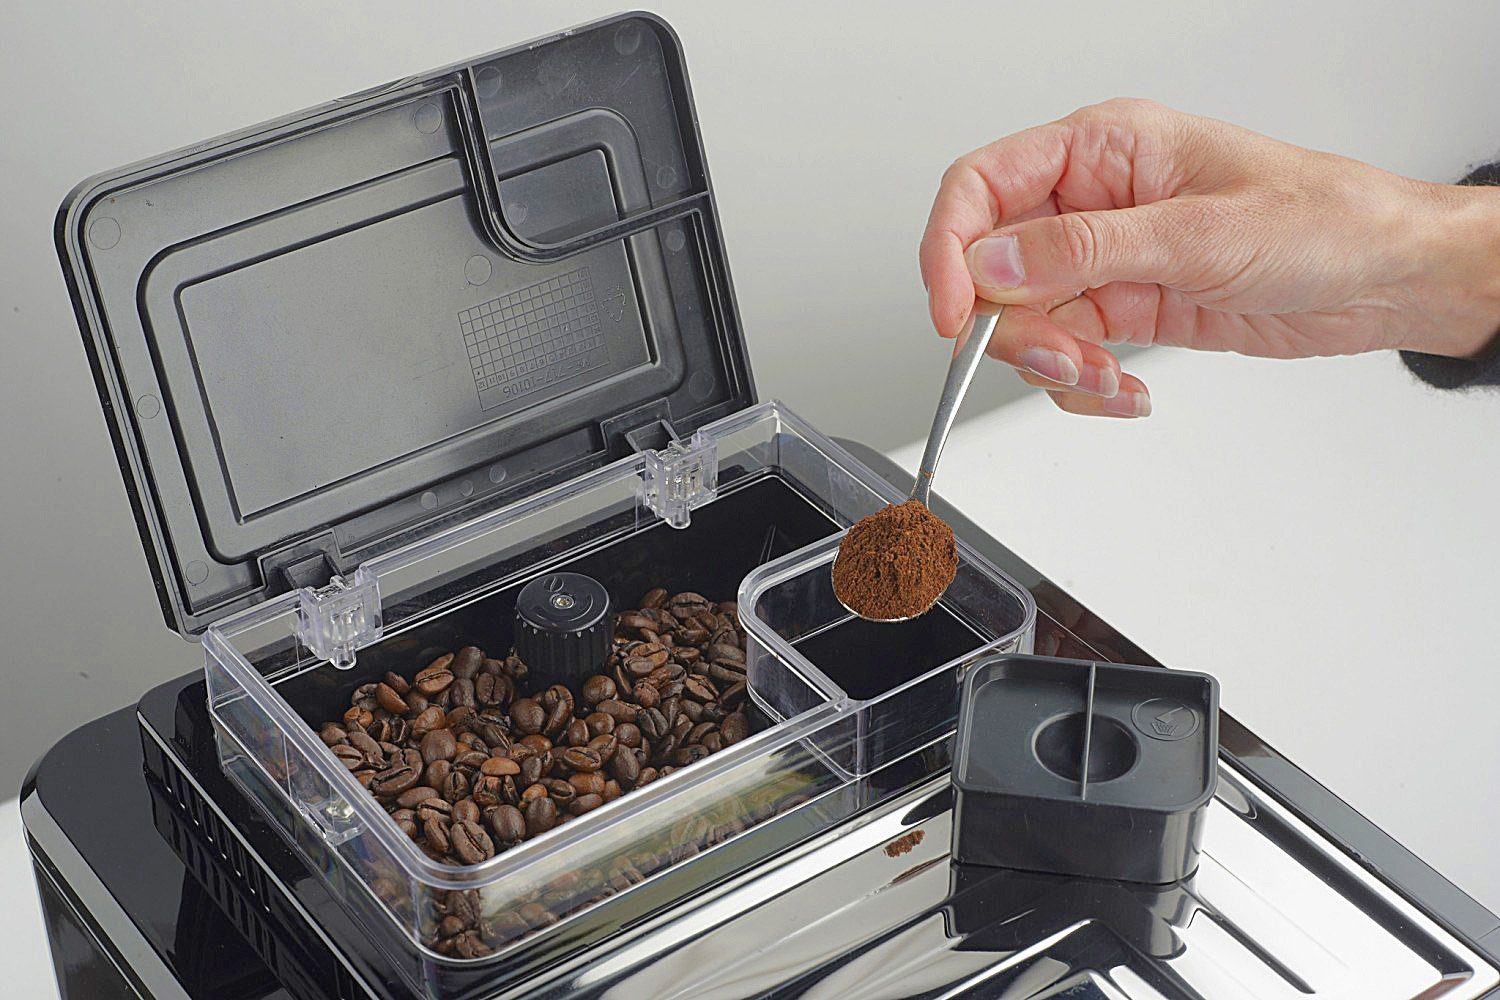 Besonders einfache Kaffeevollautomat Kaffeeherstellung Silber Touch, One durch Acopino One-Touch-Bedienung Monza